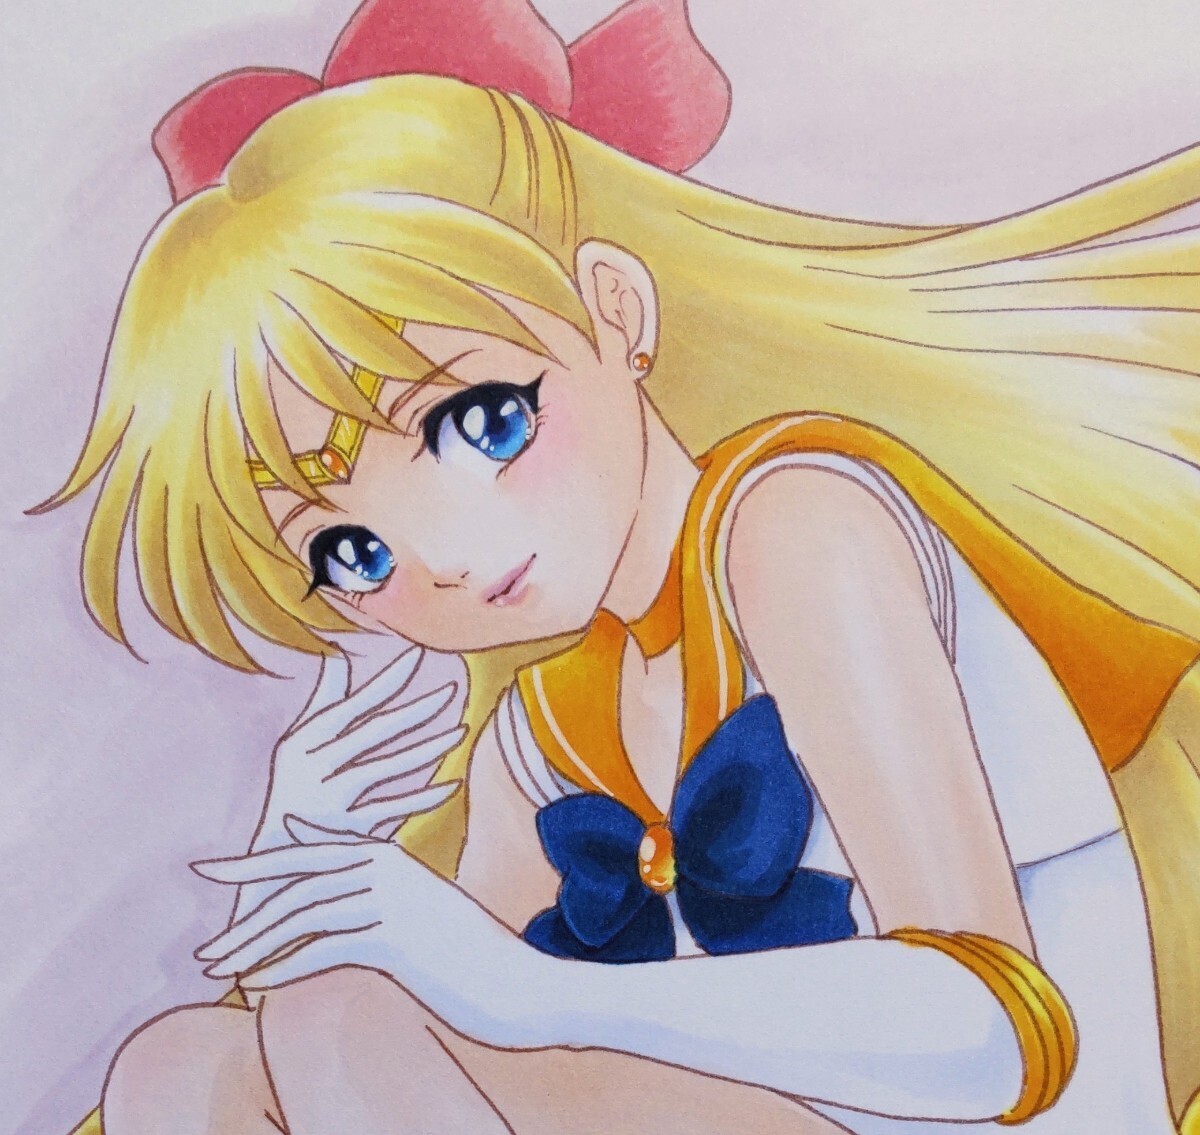 Ilustración dibujada a mano ☆ Pretty Guardian Sailor Moon ☆ Sailor Venus ☆ Minako Aino ☆ Tamaño B5, historietas, productos de anime, ilustración dibujada a mano